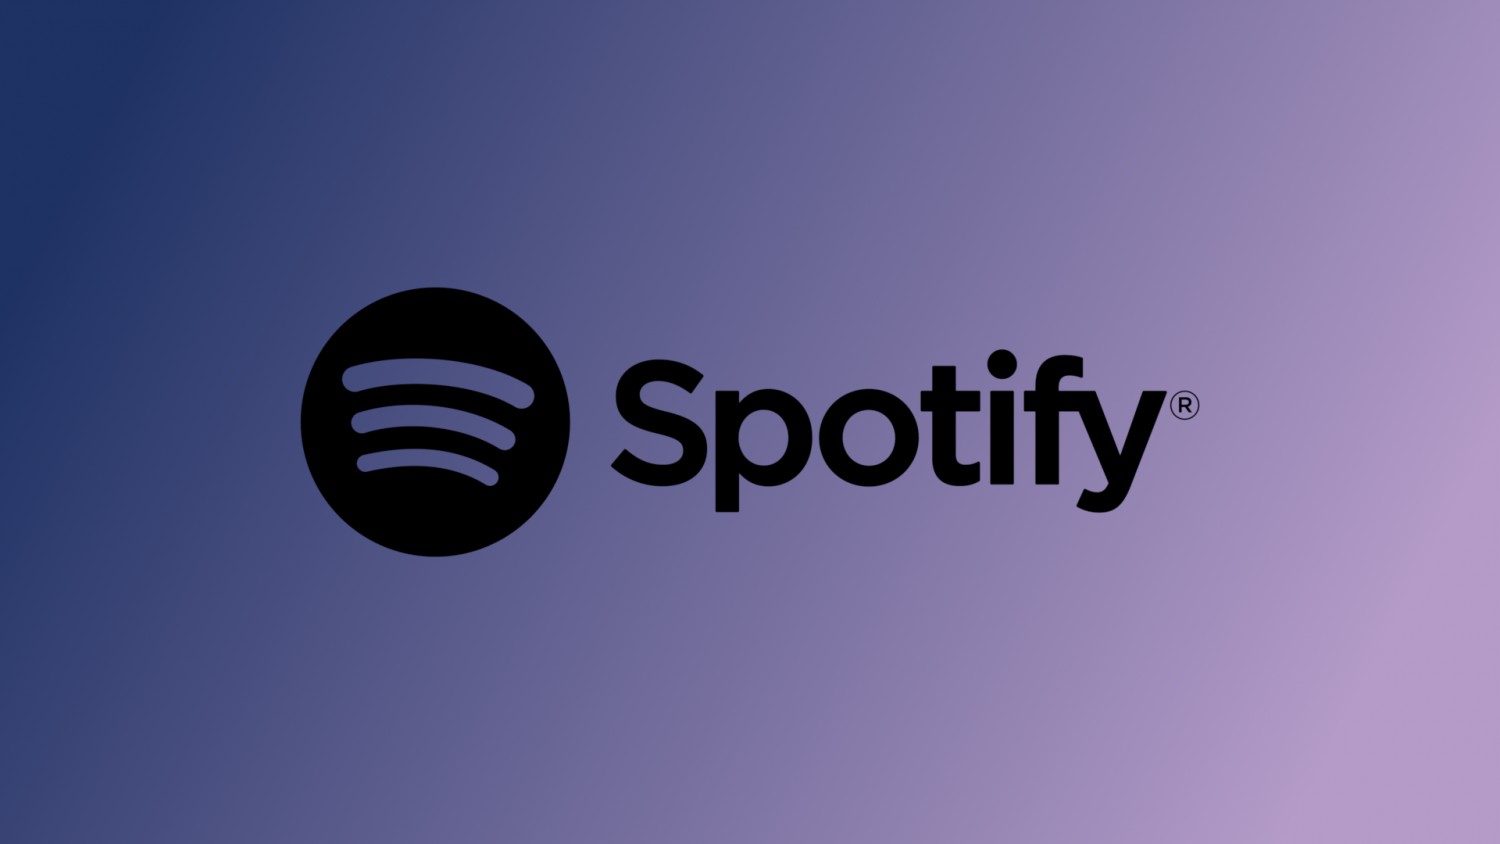 Spotify увеличила число активных пользователей на 13 млн за второй квартал